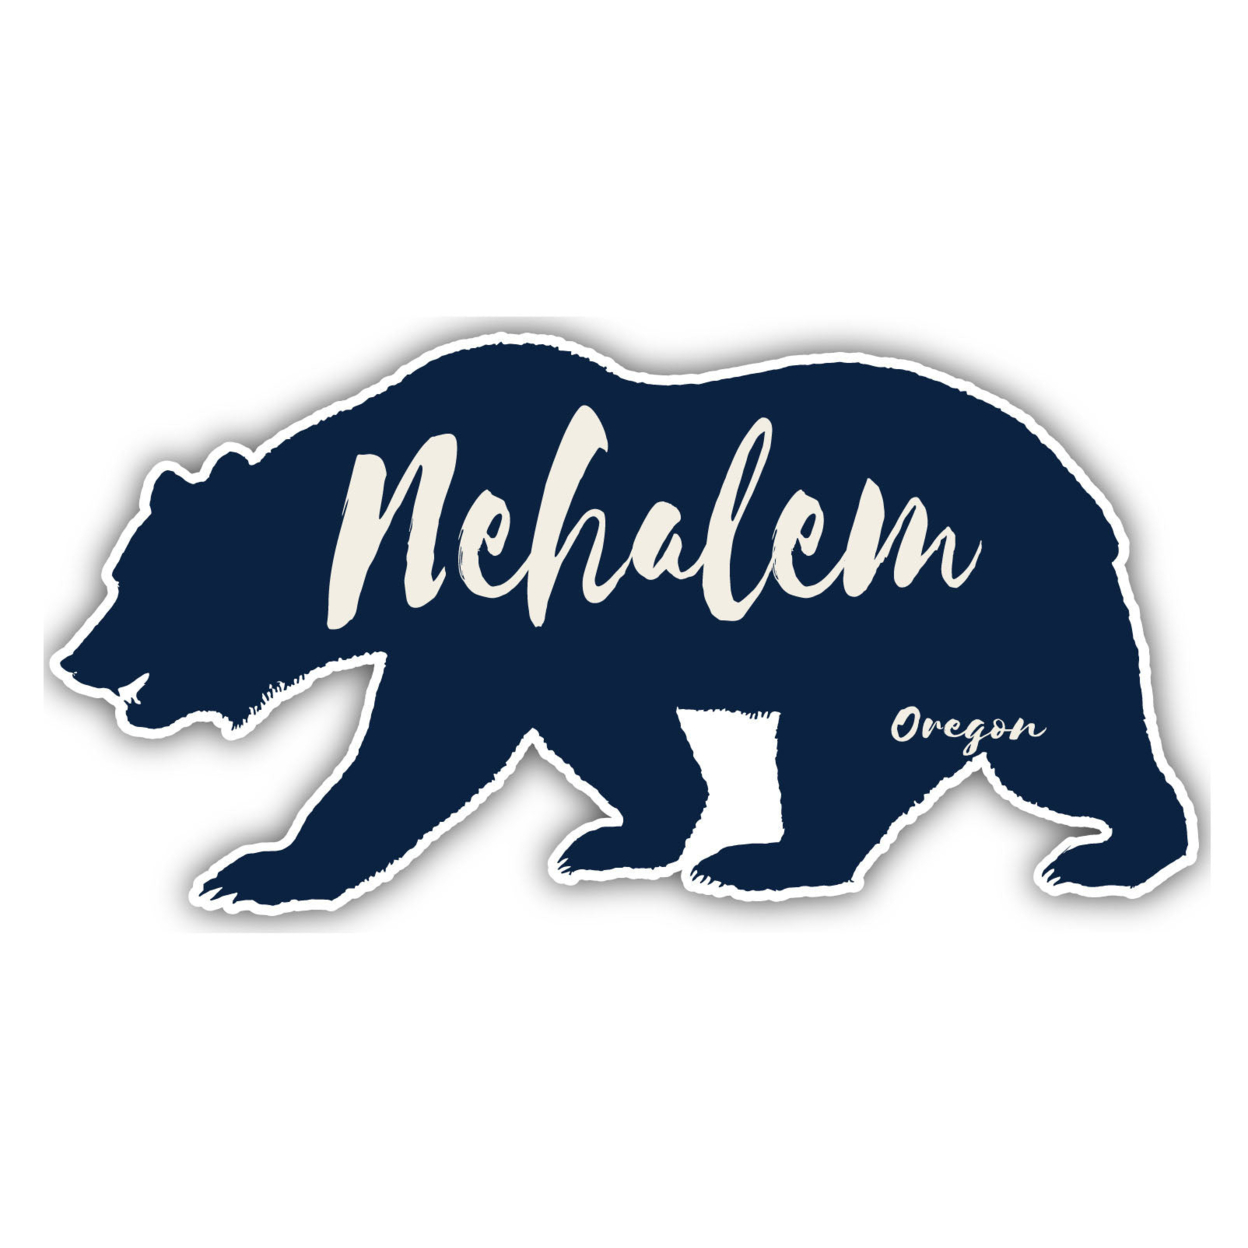 Nehalem Oregon Souvenir Decorative Stickers (Choose Theme And Size) - Single Unit, 4-Inch, Camp Life